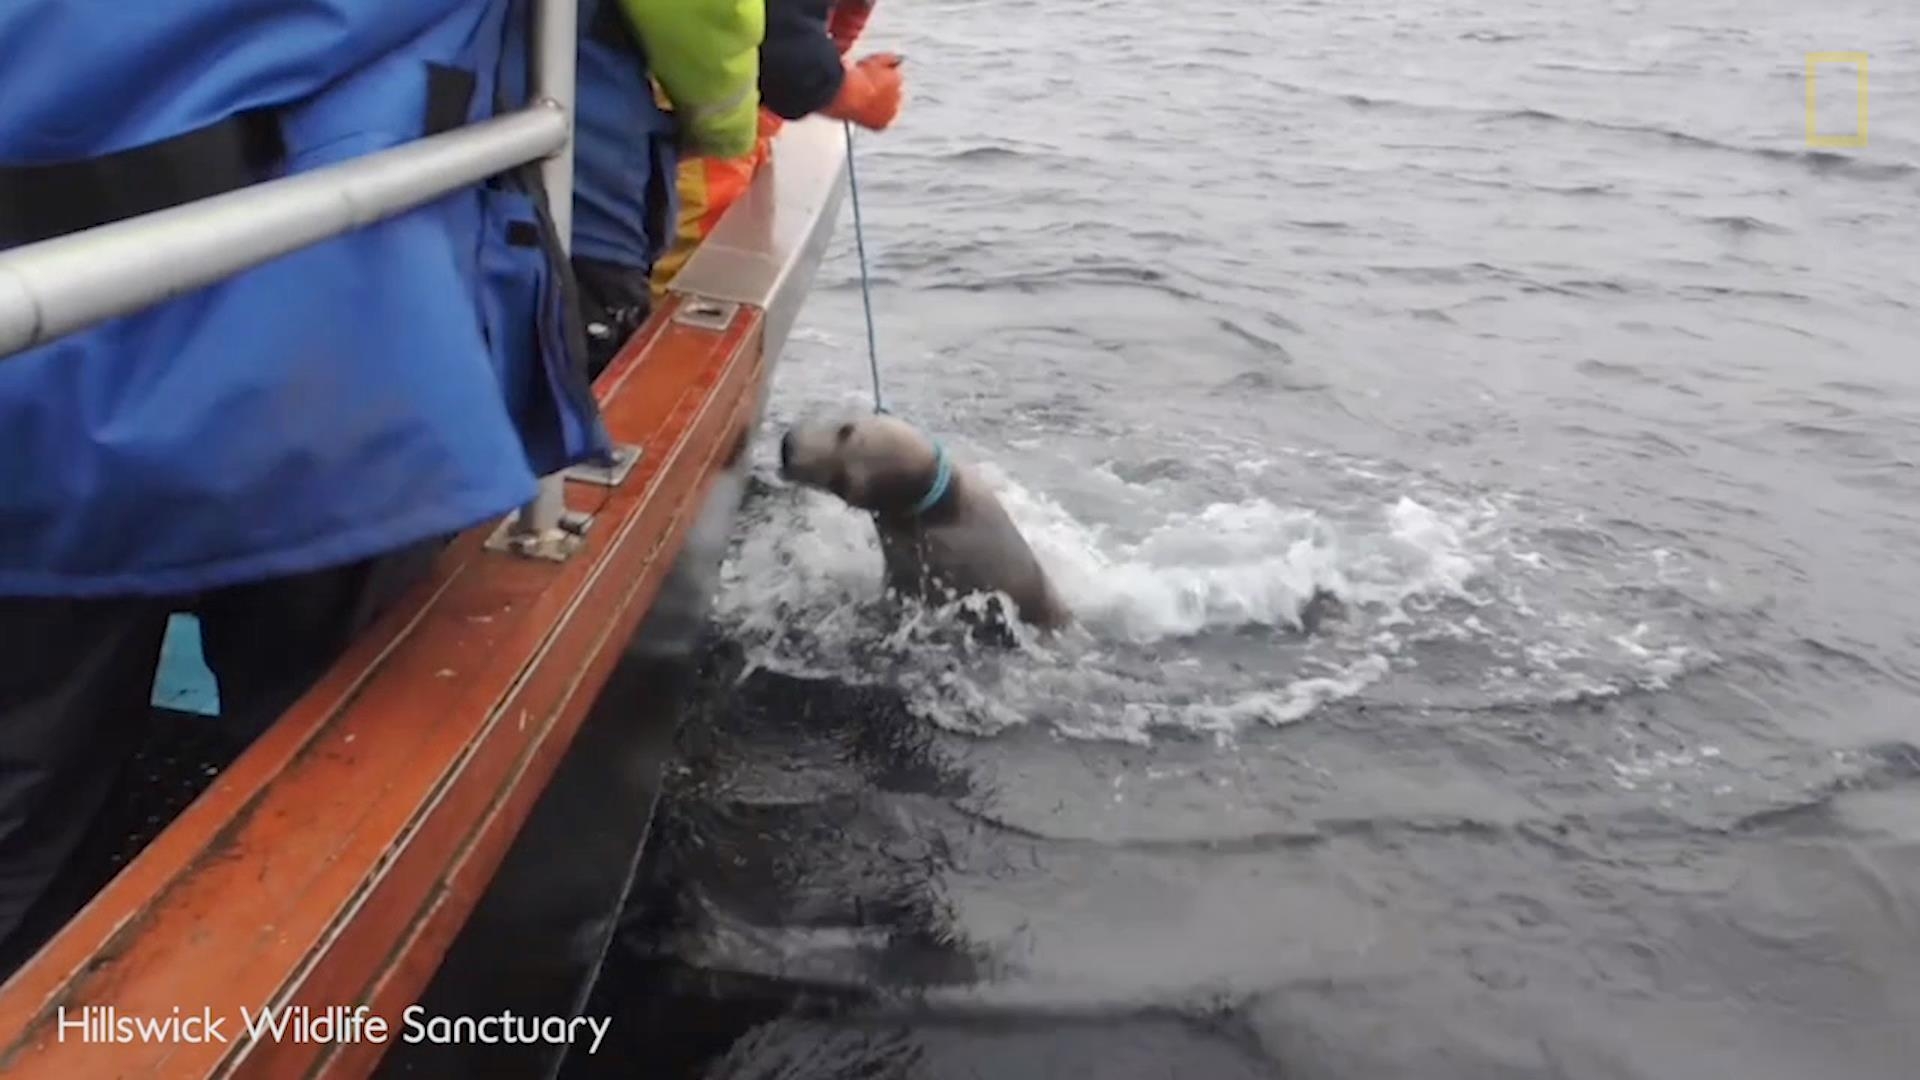 看救援人員拯救被釣魚線纏住的海豹